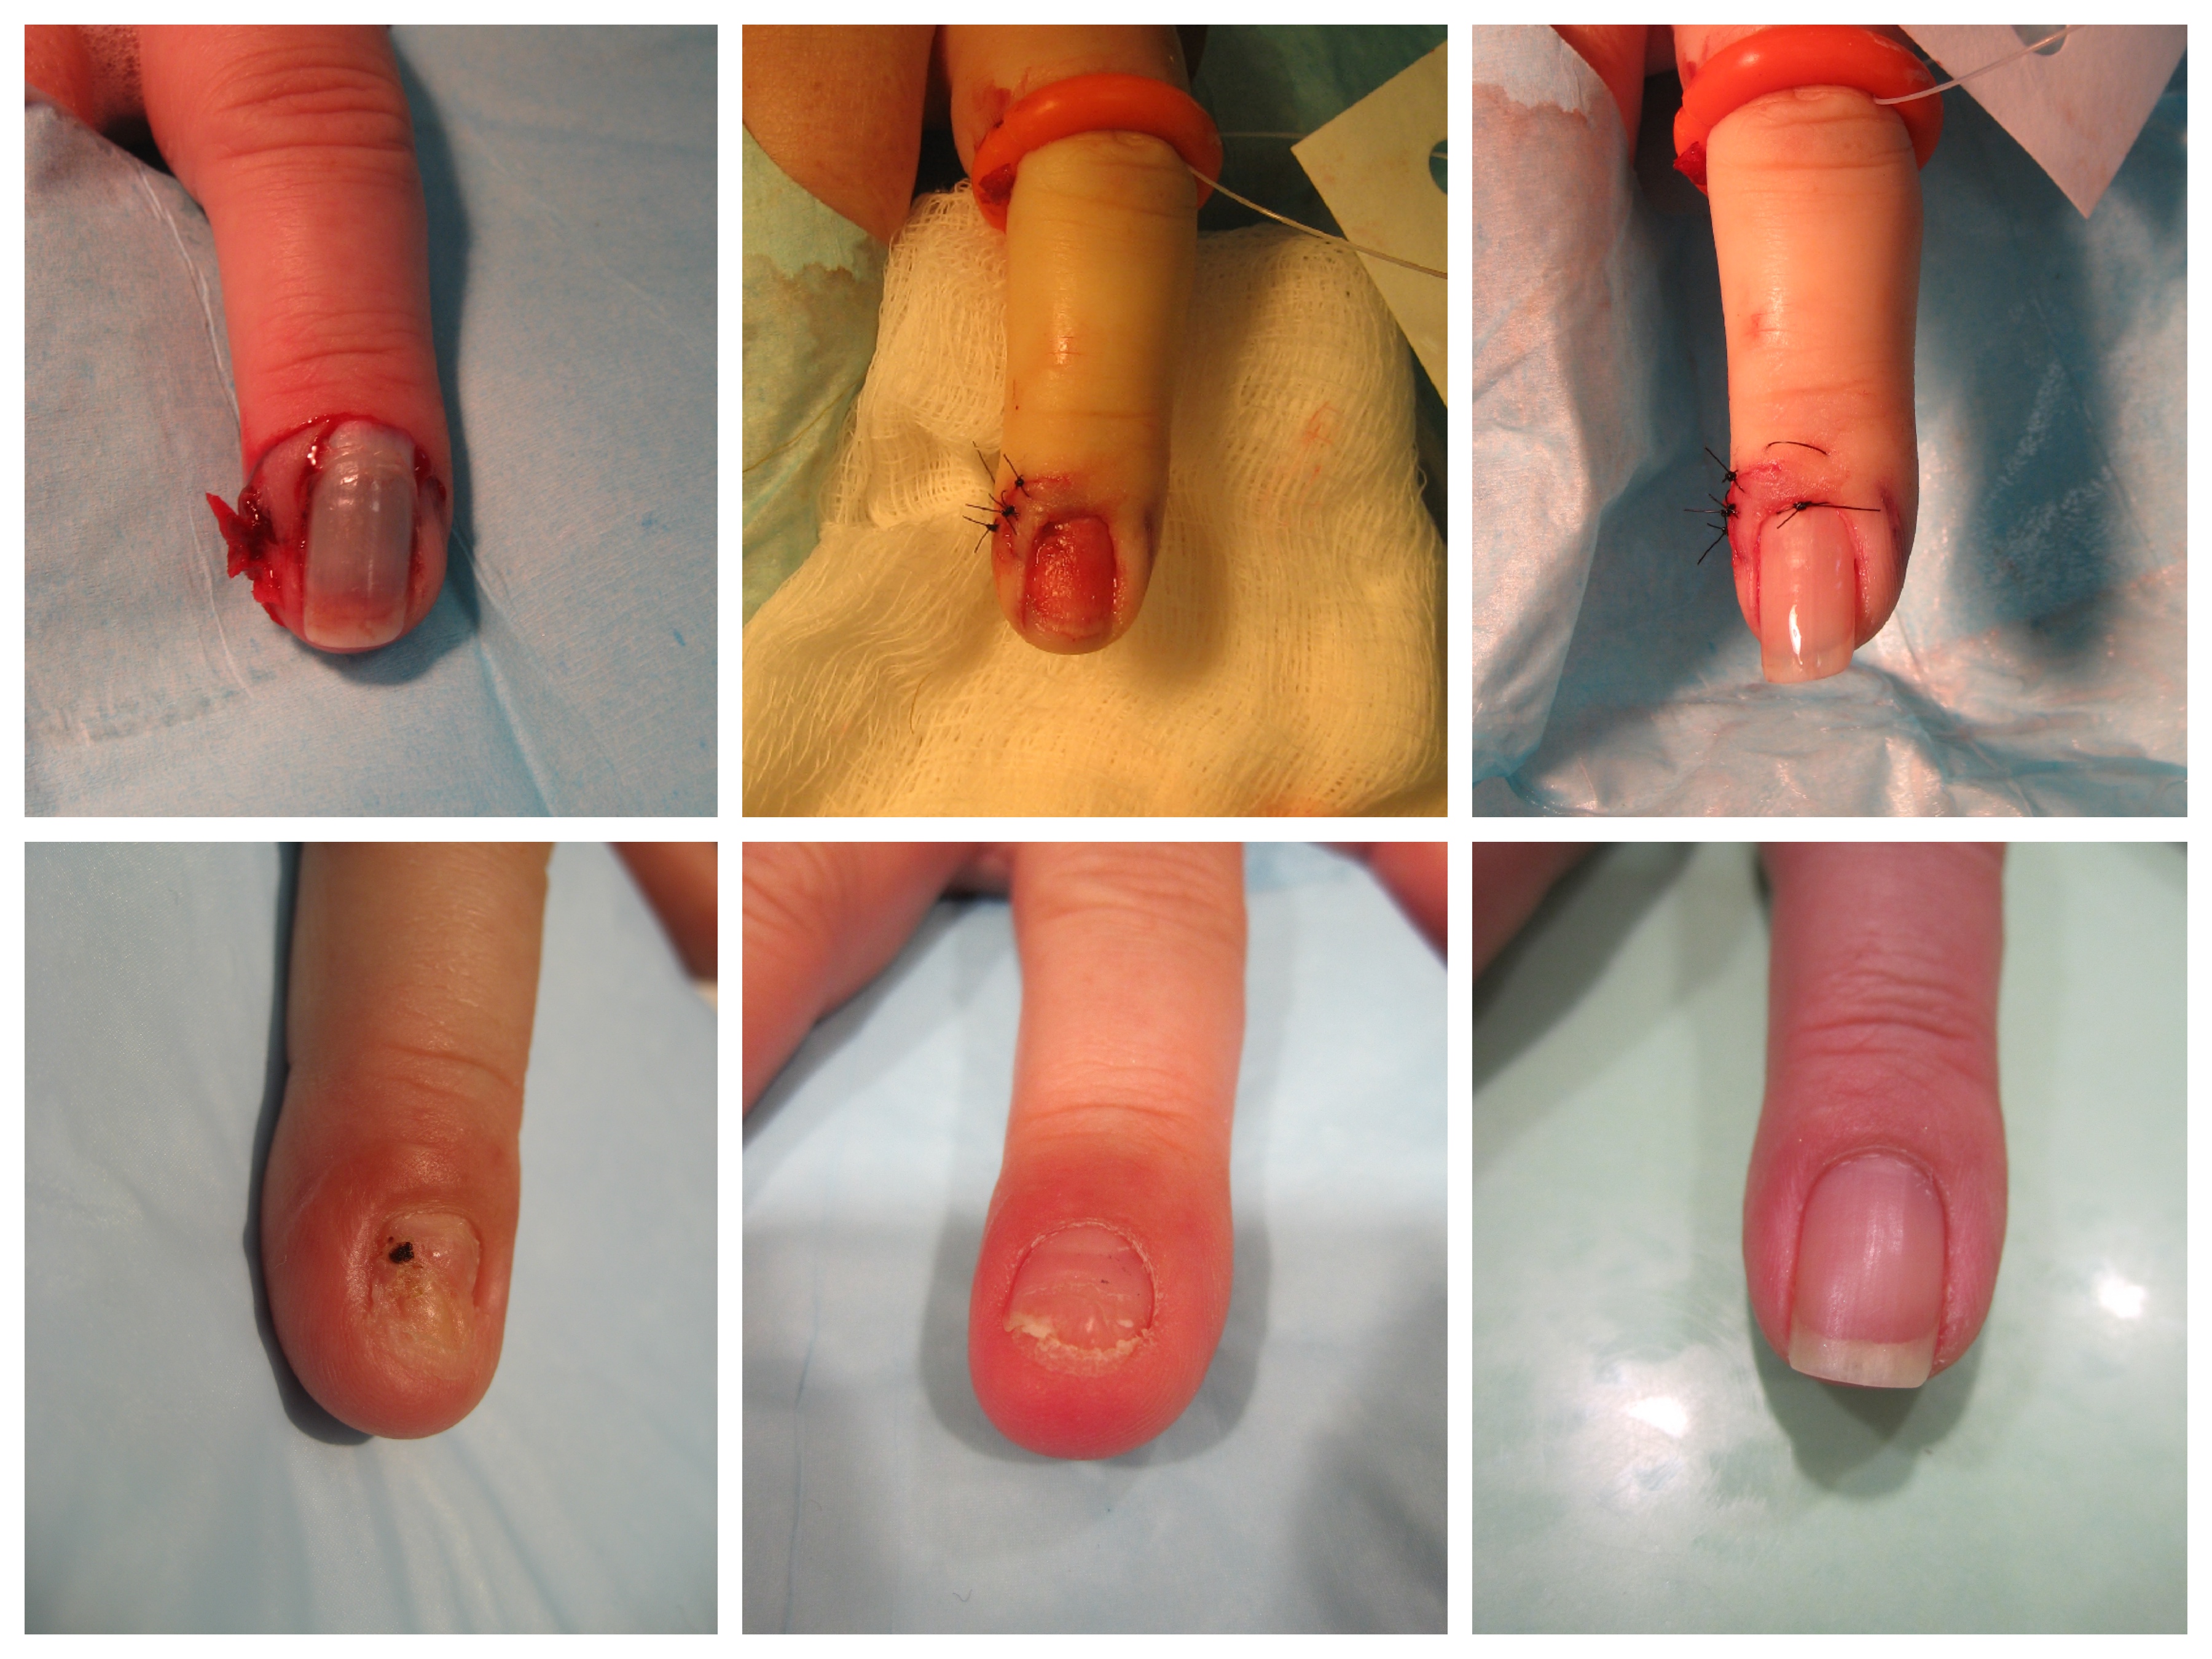 Surgical Repair of Fingernail Injury - John Erickson, MD